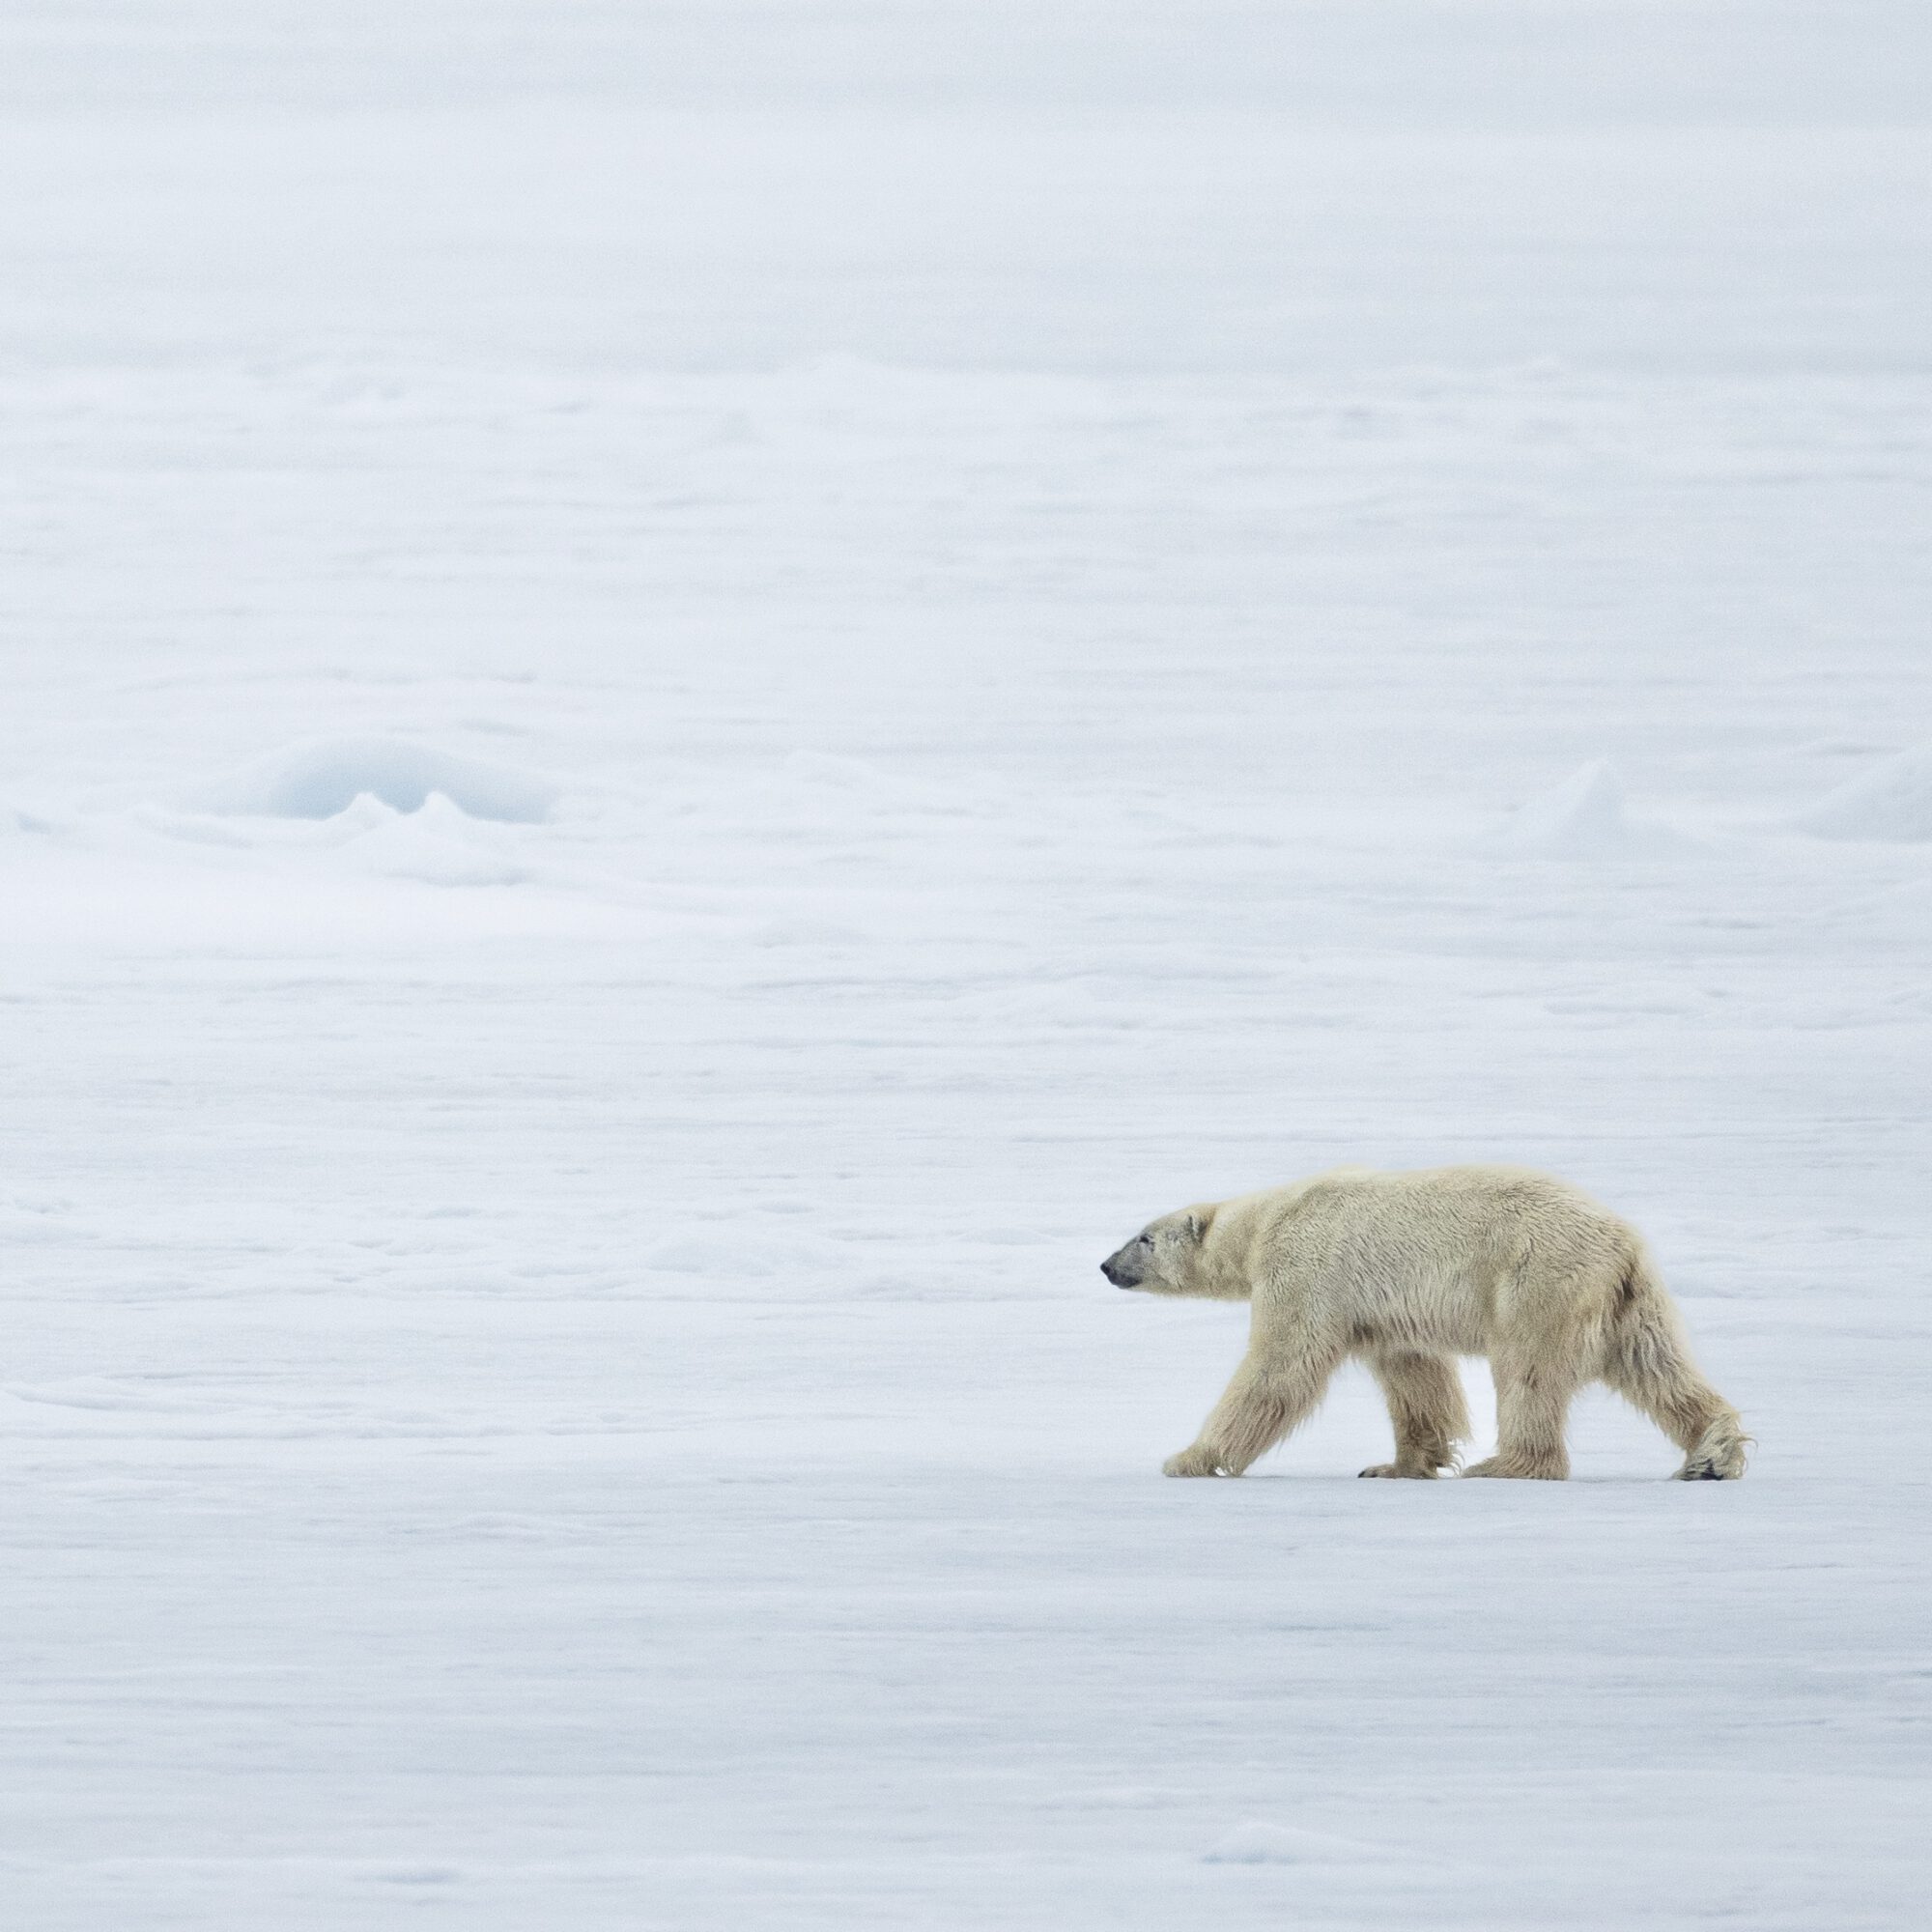 Polar bears social animals